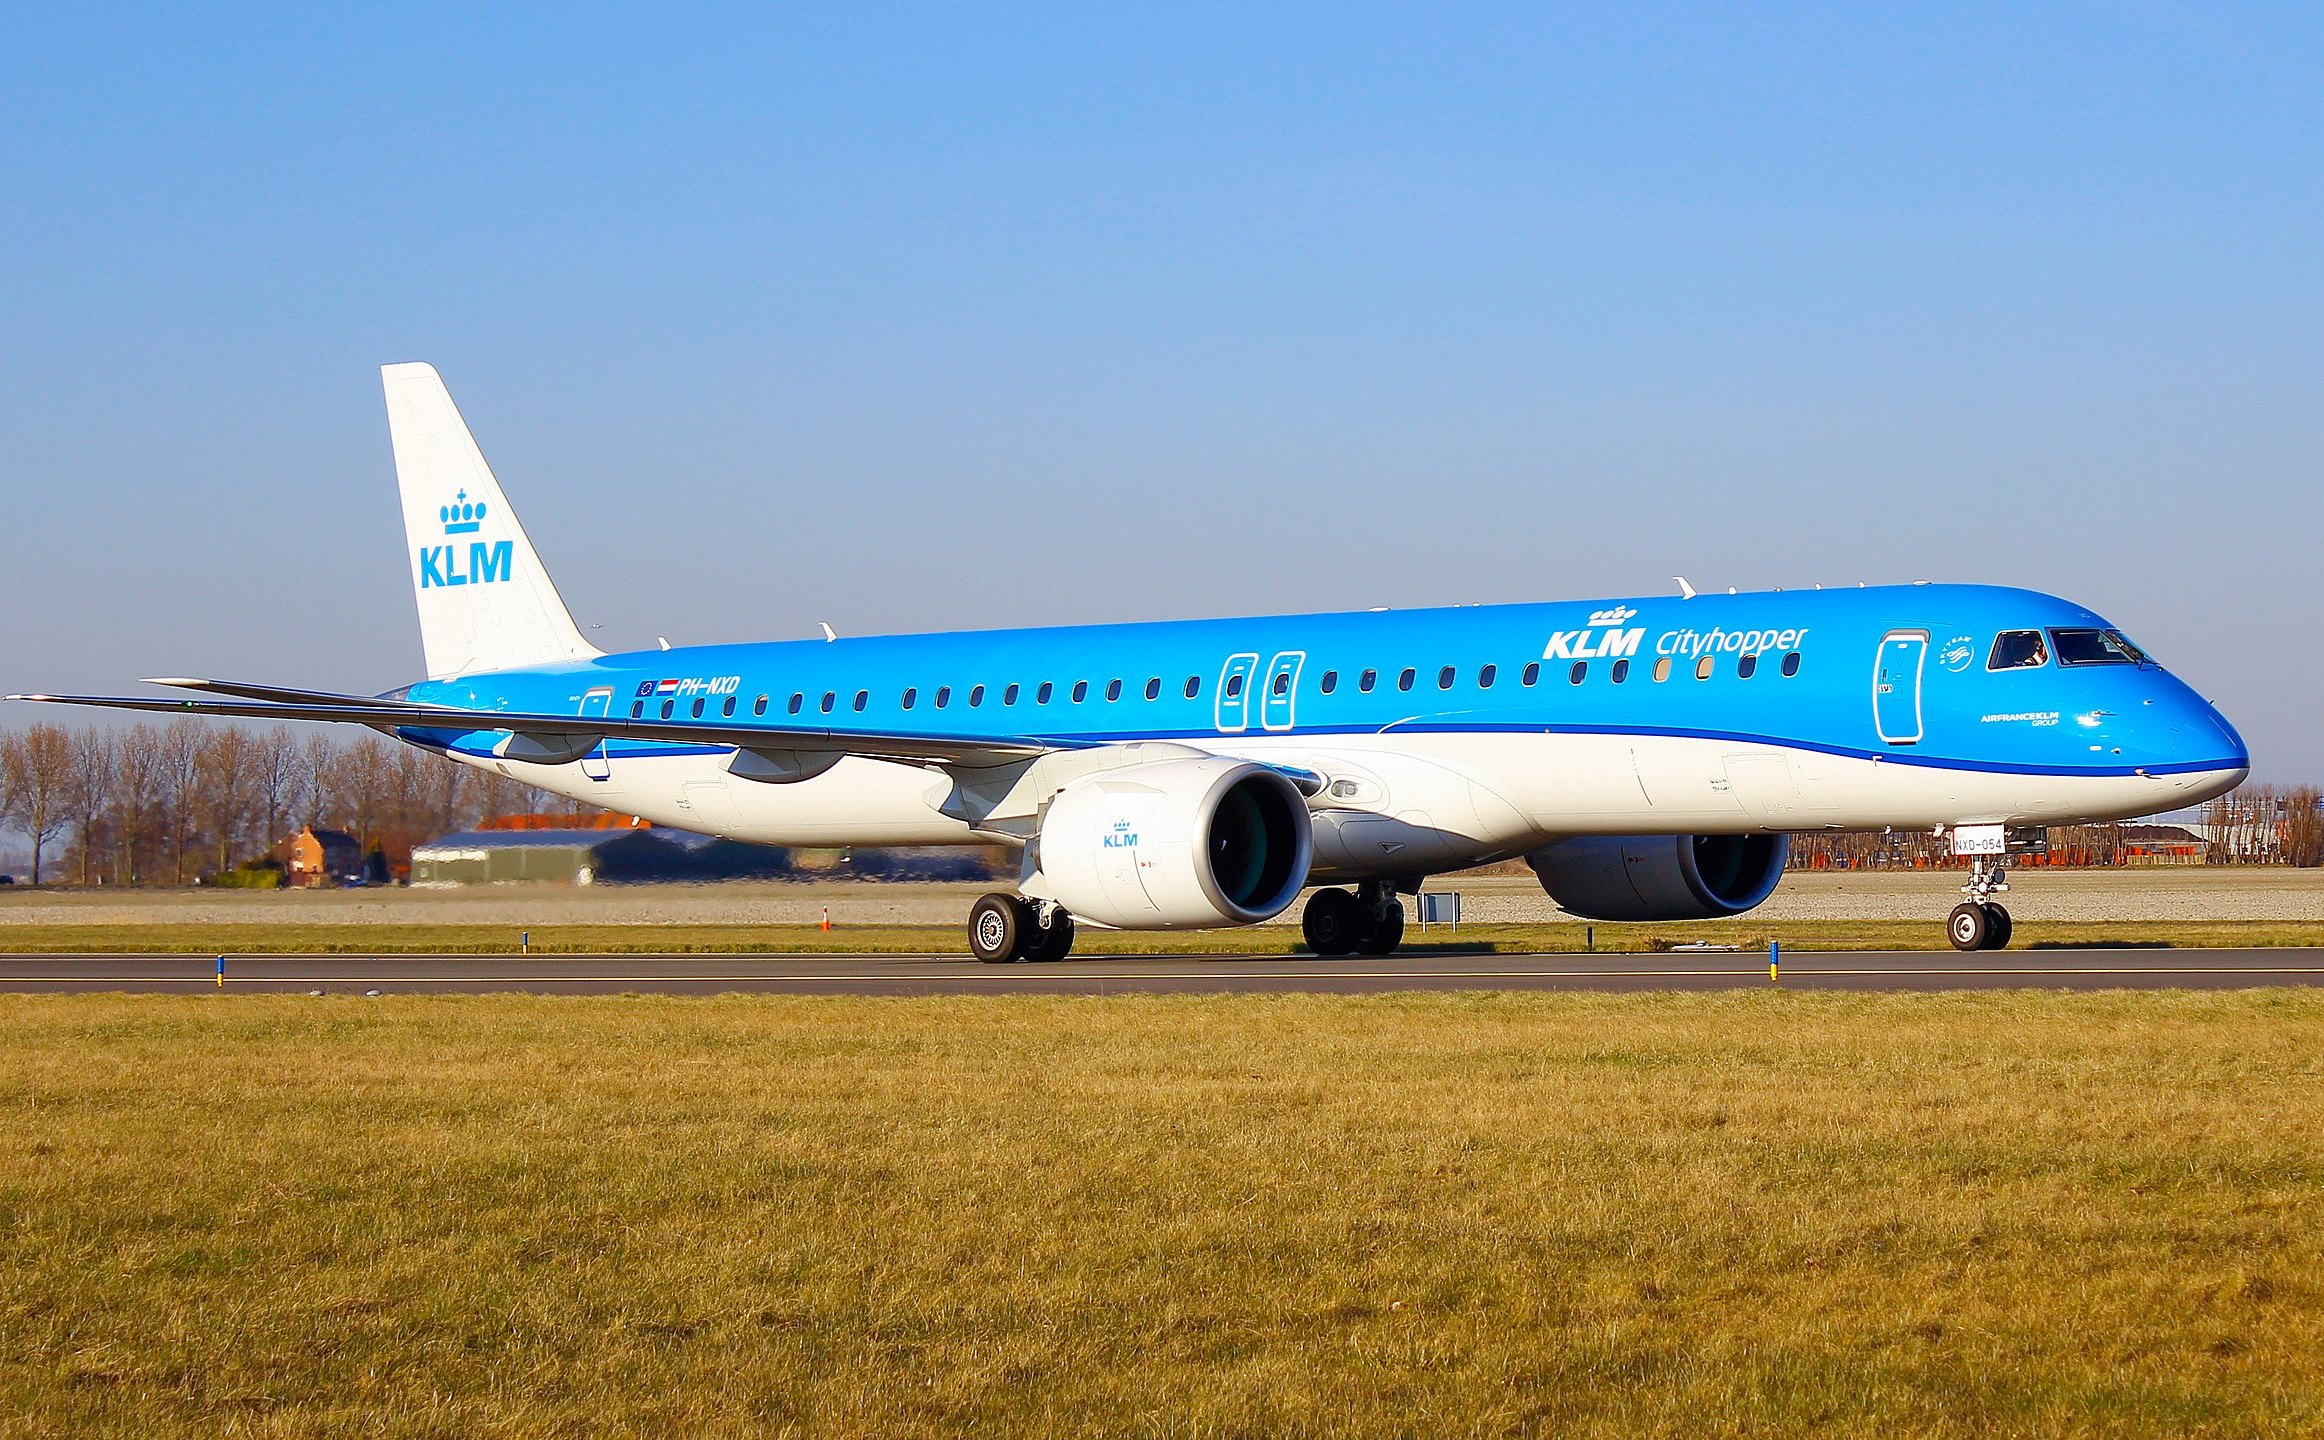 Pratt & Whitney Üretimi Motorlar, KLM Cityhopper’ın da Başını Ağrıtıyor